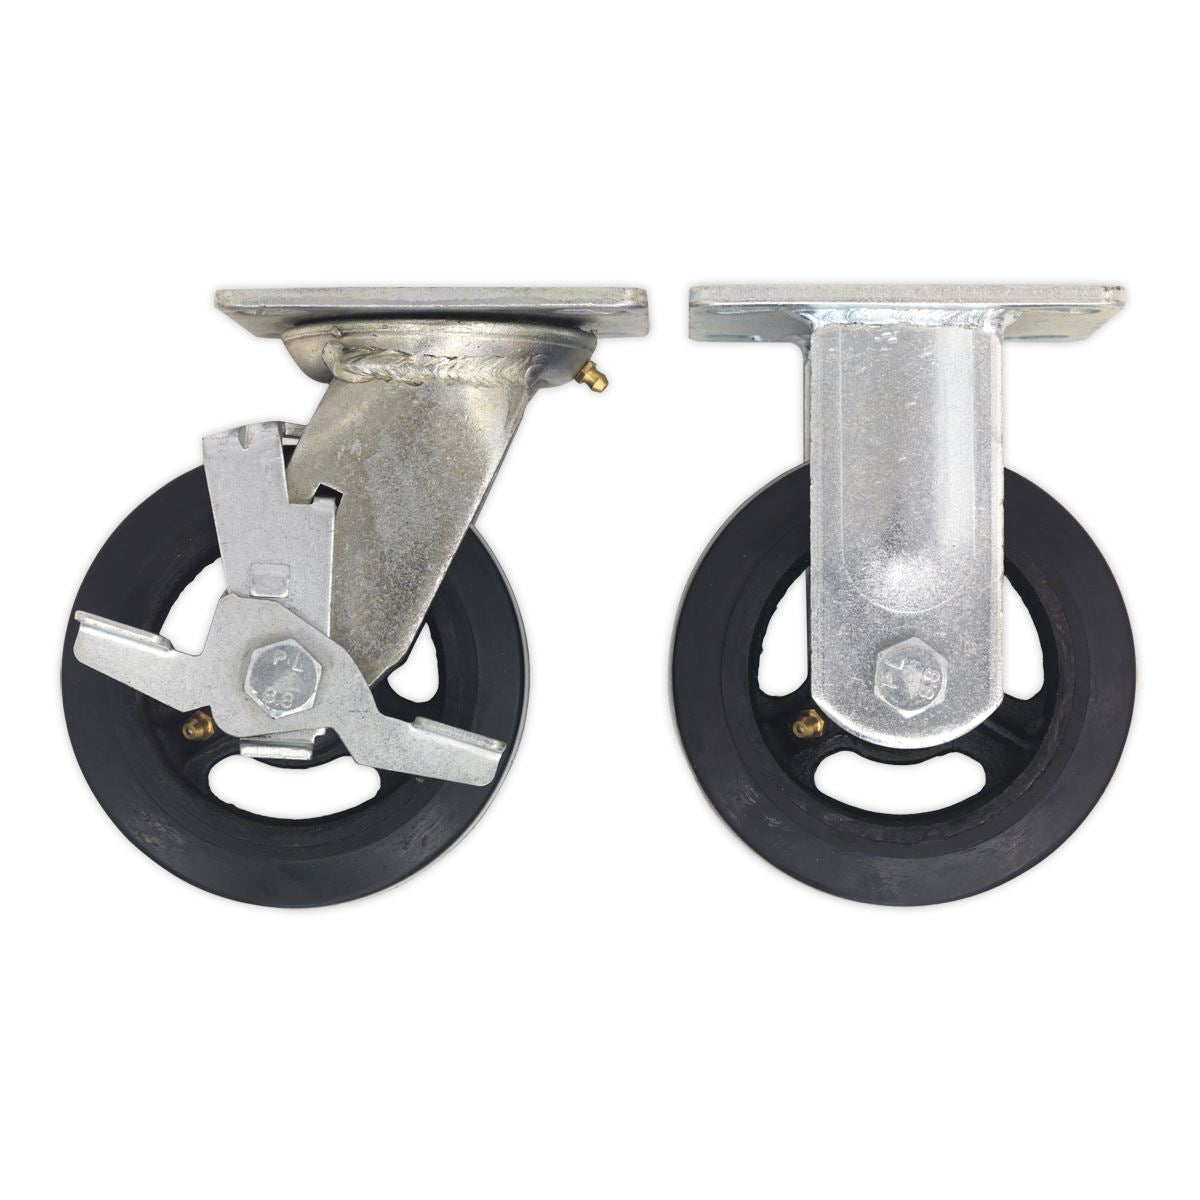 Sealey Castor Wheel Kit for SSB06, SSB07 & STV01